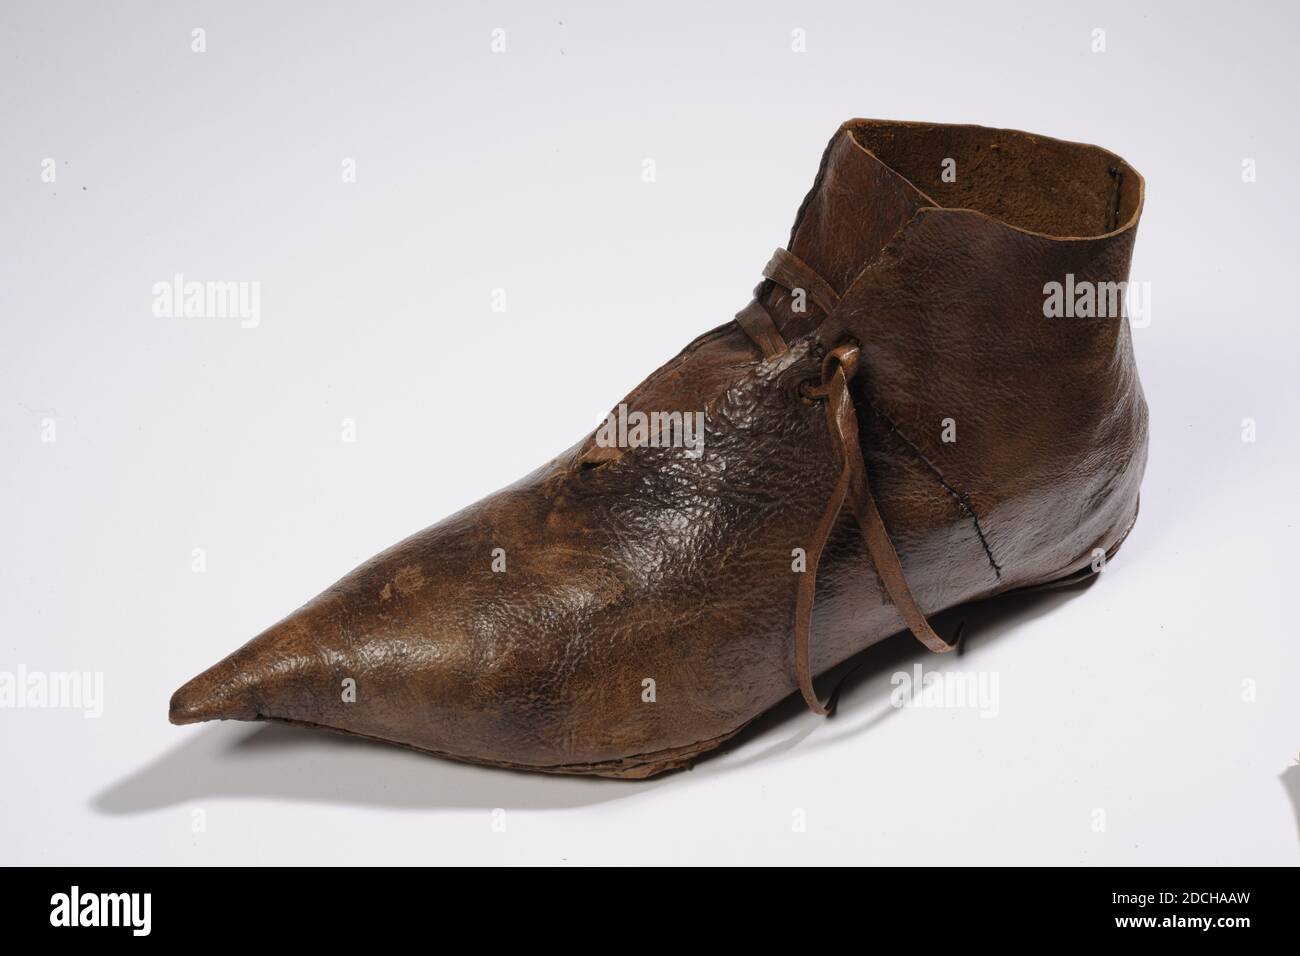 Toot shoe, Anonymous, 14. Jahrhundert, genäht, Allgemein: 11.8 x 7.8 x 25cm  118 x 78 x 250mm, Leder Toot shoe, auch Schnabelschuh genannt, wegen der  spitzen Zehe. Es ist ein hoher Schuh,